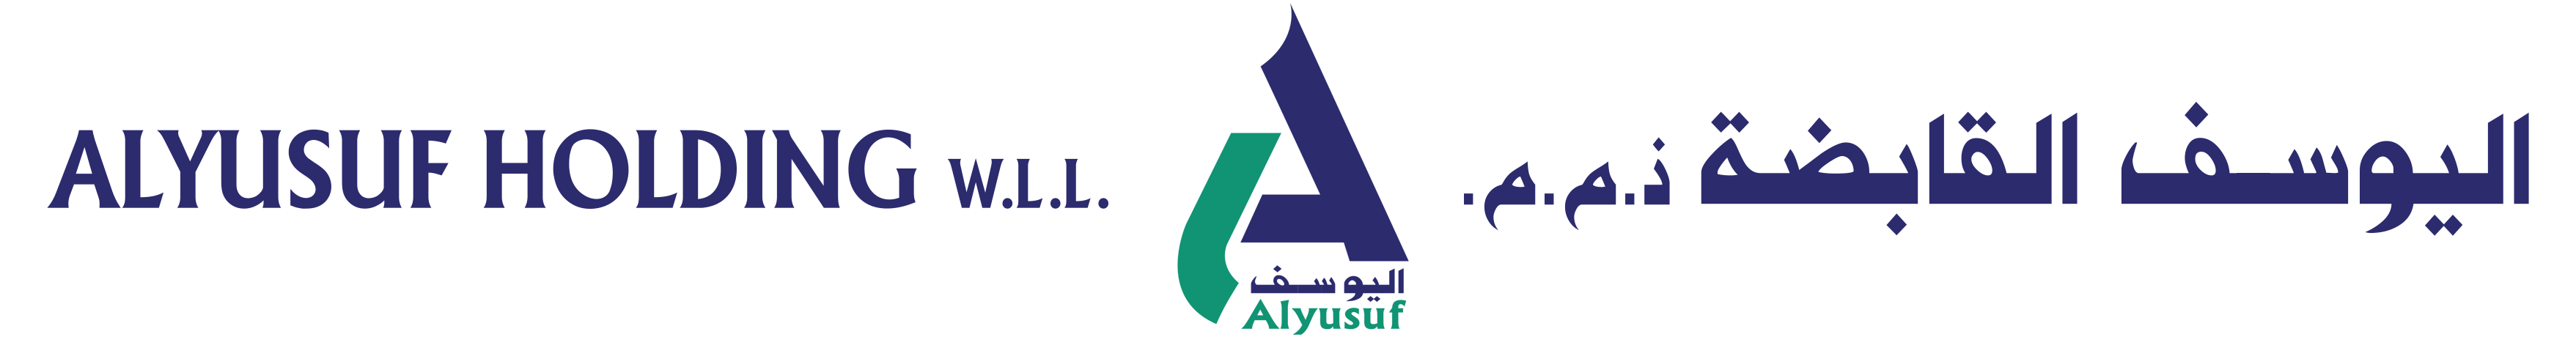 alyusuf-logo